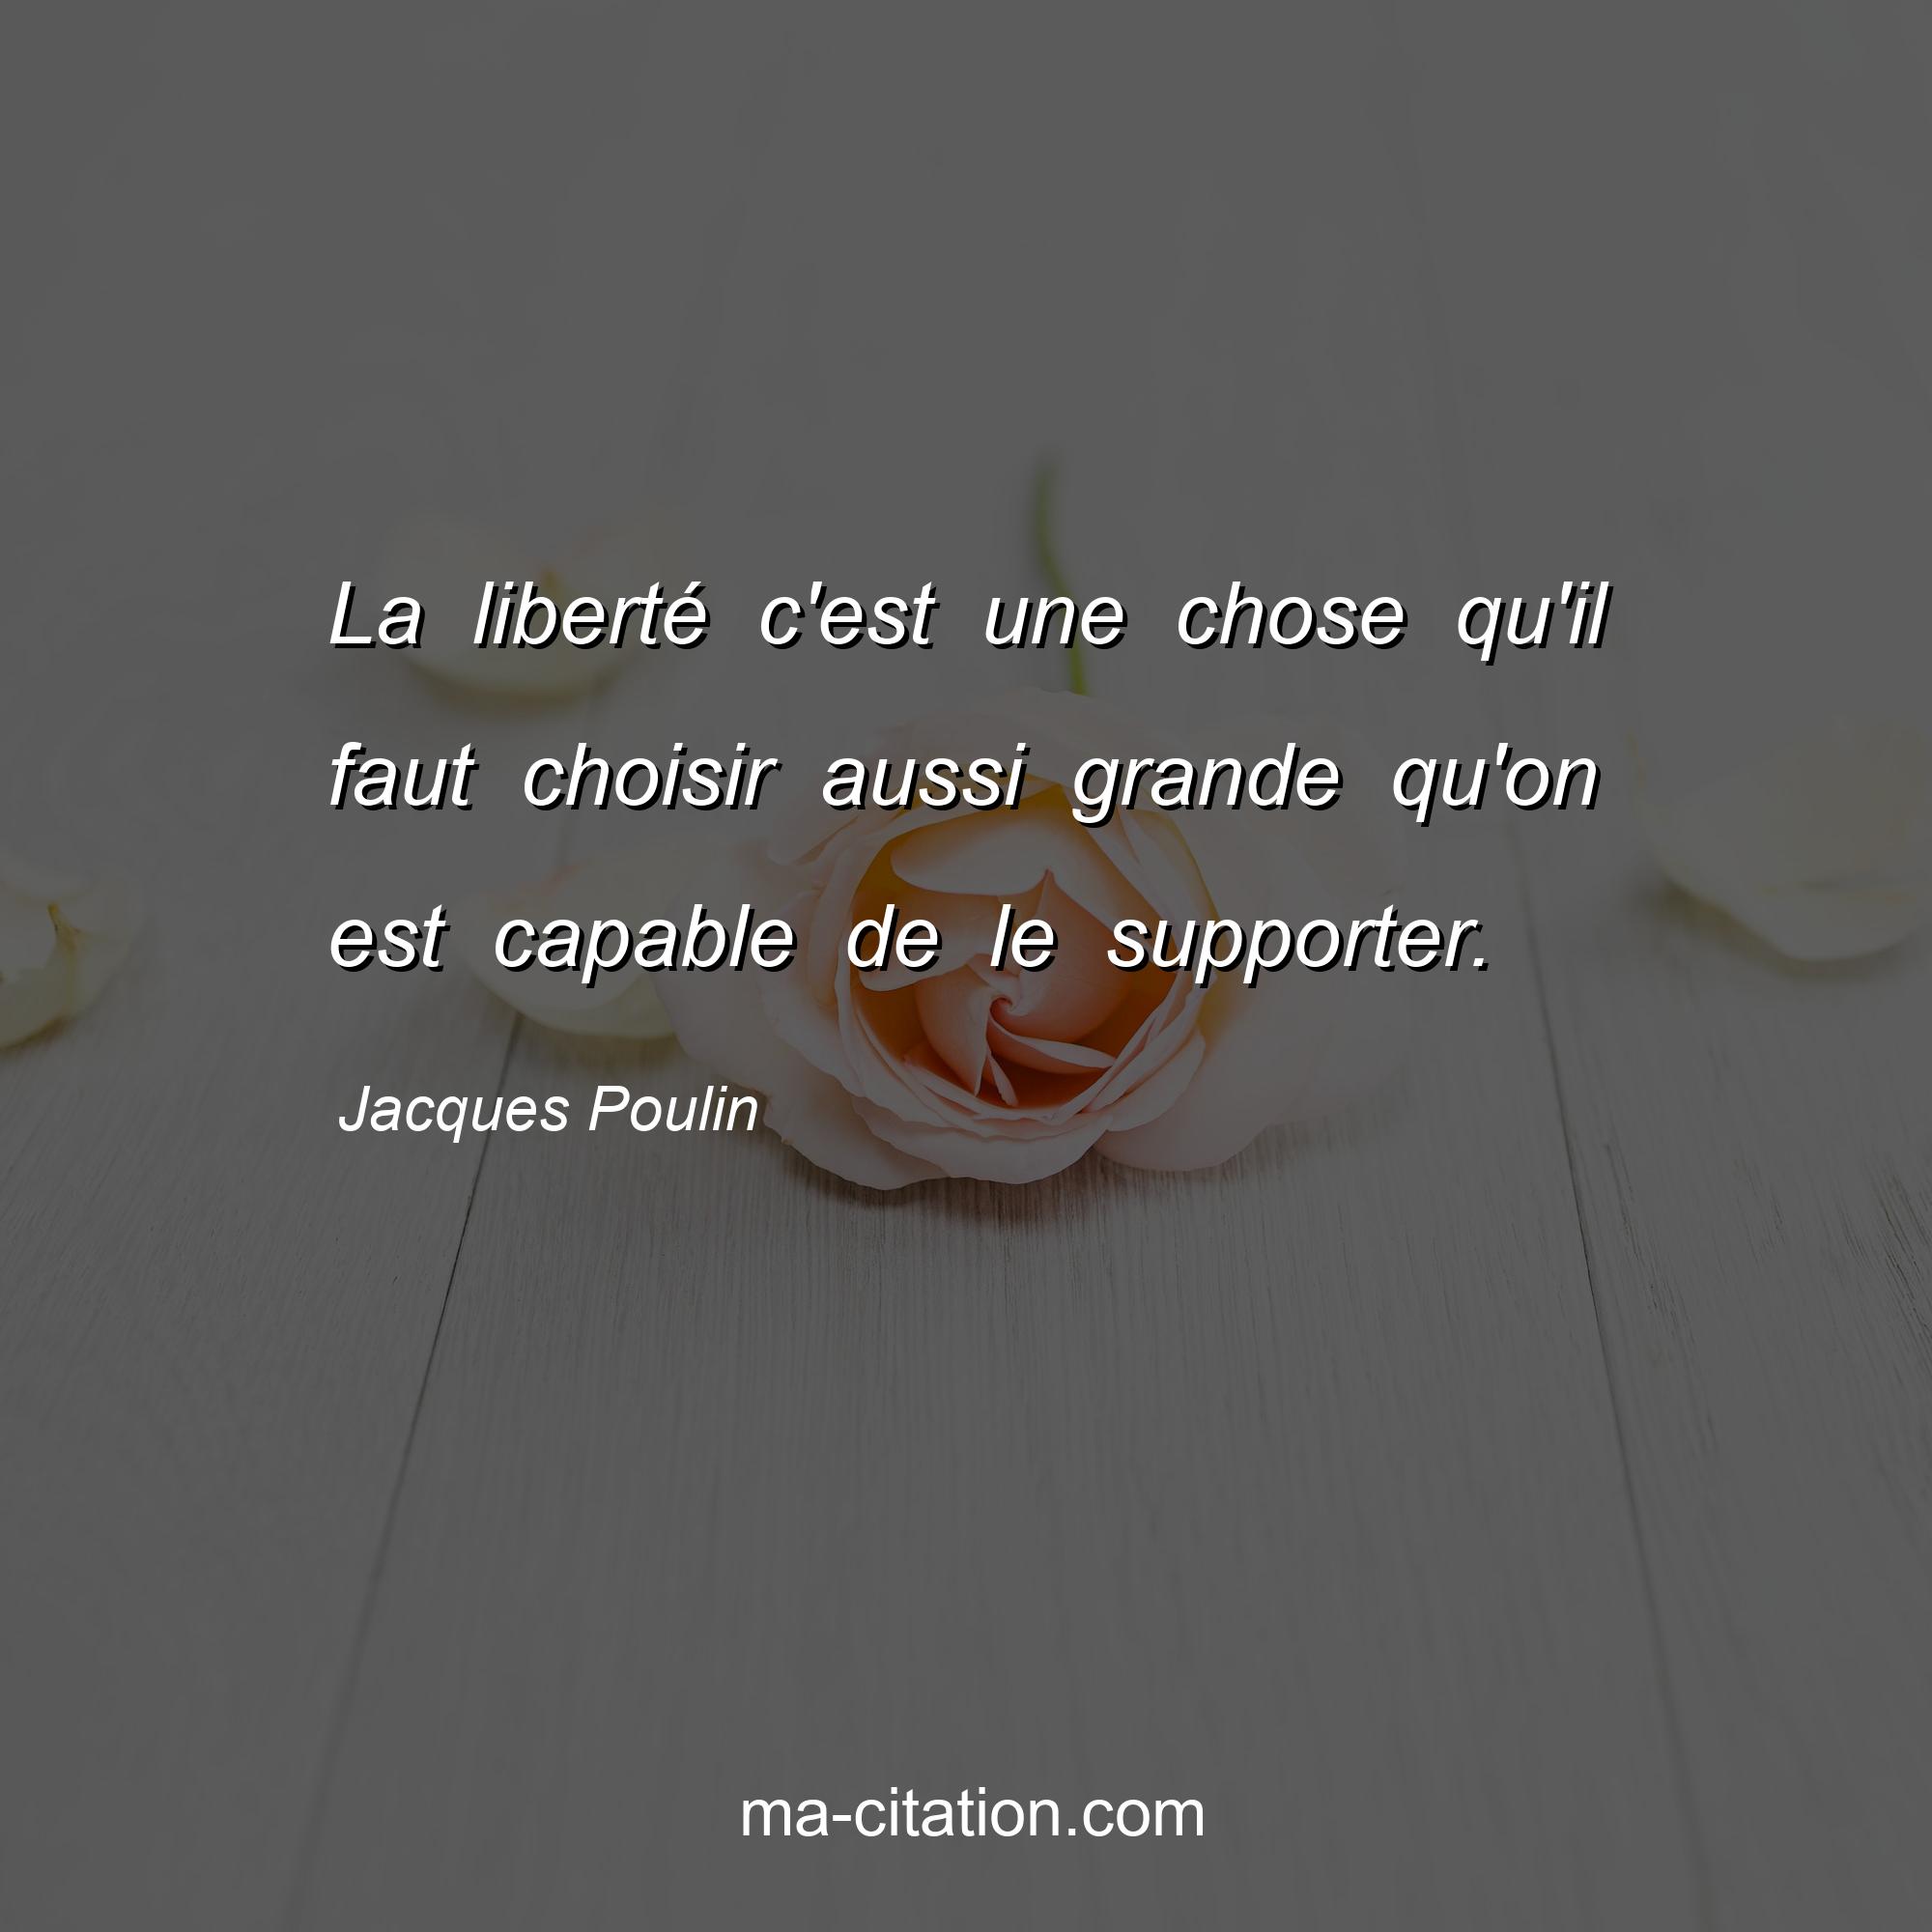 Jacques Poulin : La liberté c'est une chose qu'il faut choisir aussi grande qu'on est capable de le supporter.